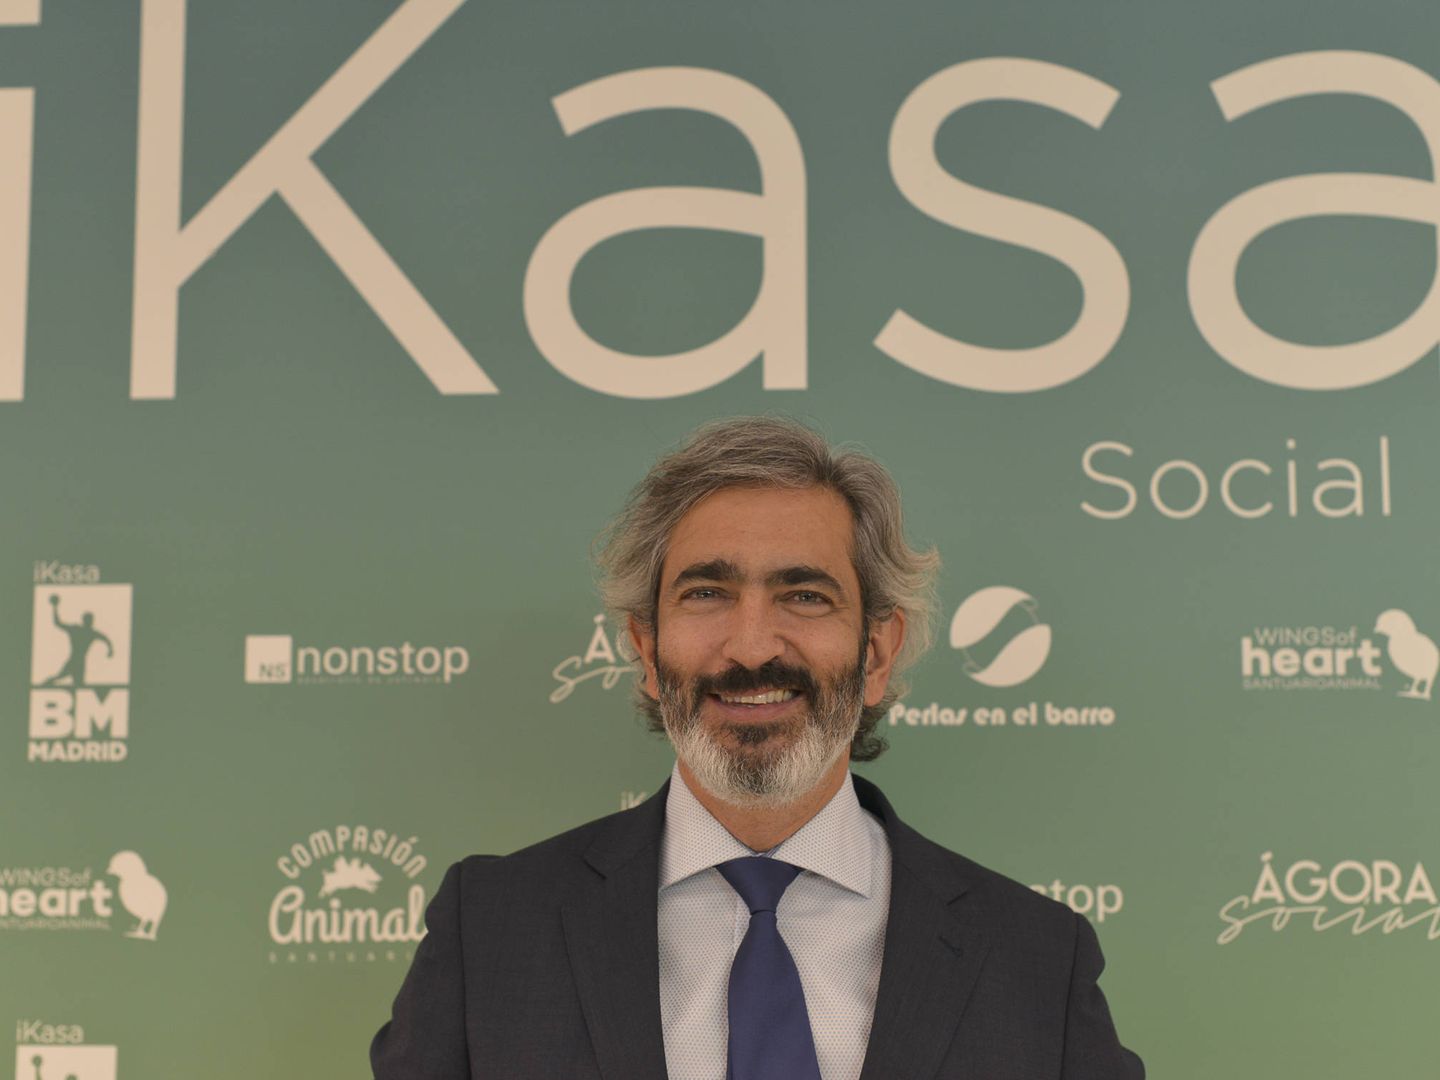 Iván Rodríguez, CEO de iKasa.